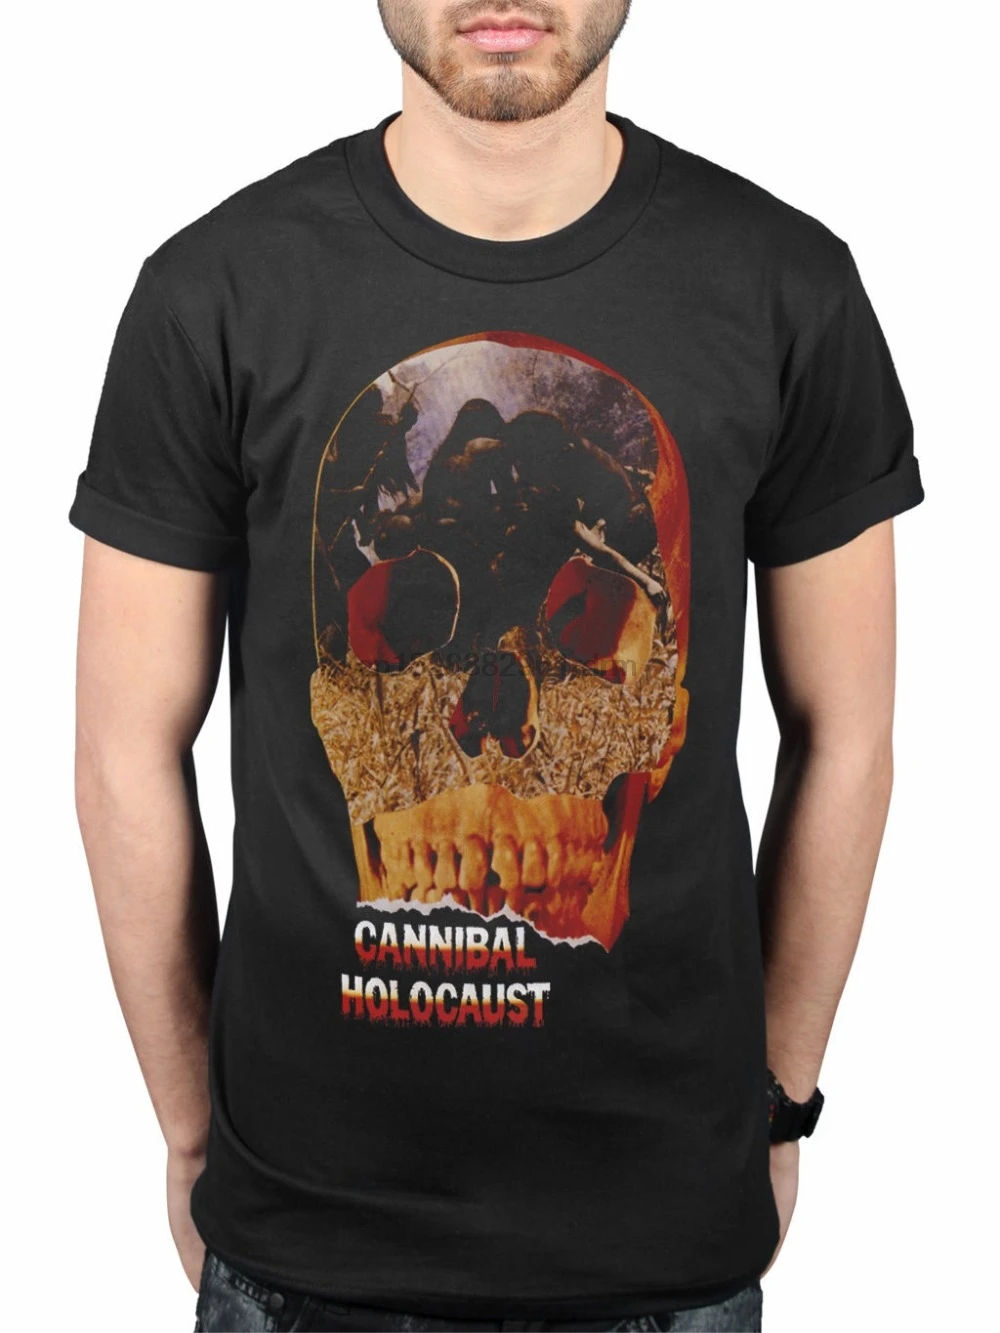 Новейшая забавная футболка 2019 Plan 9 Cannibal холоcost с графическим черепом новая из